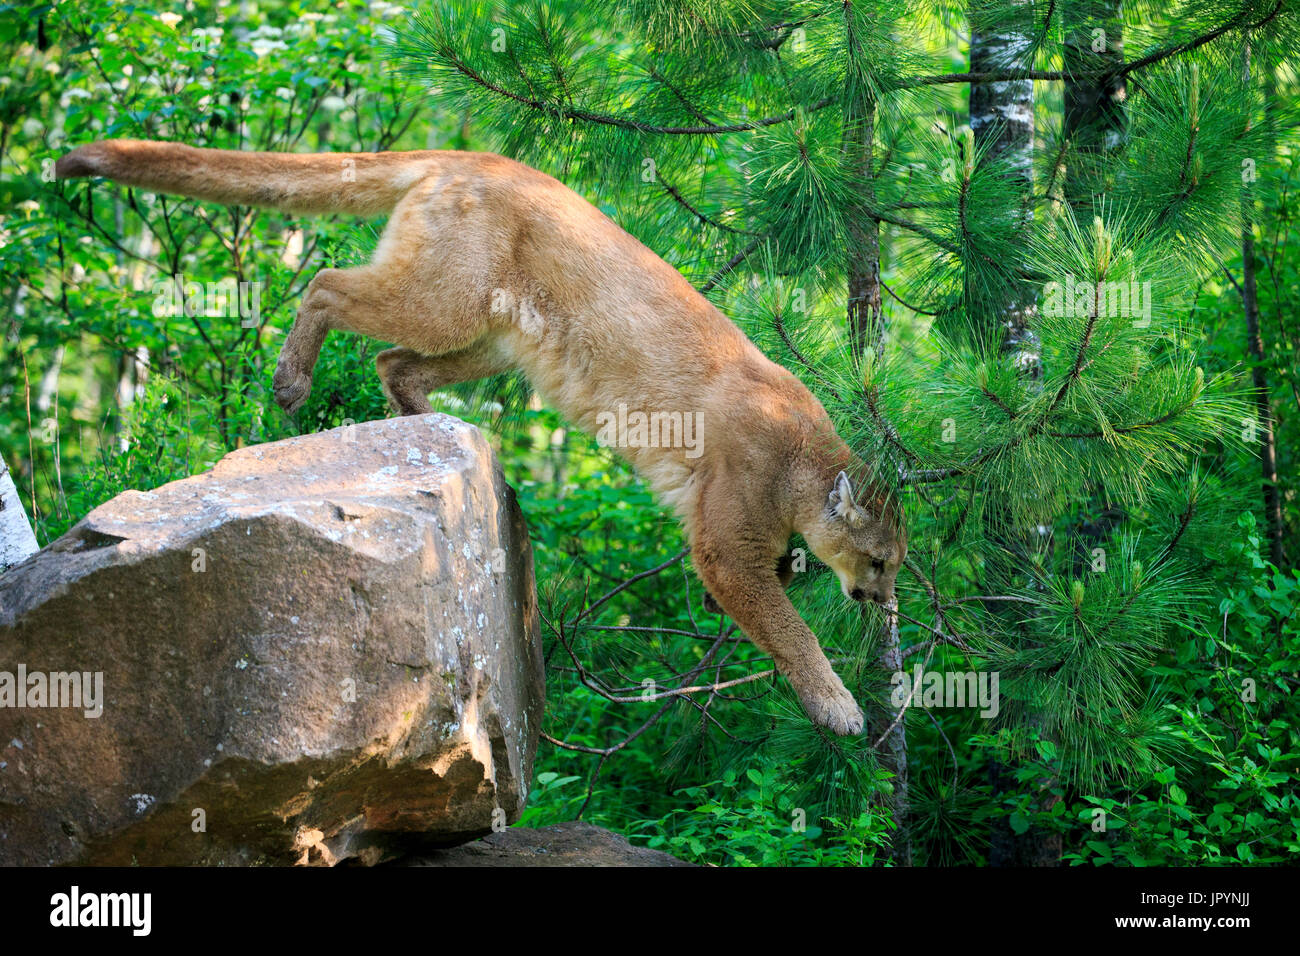 Puma saltando desde una roca - Minnesota, Fotografía de - Alamy